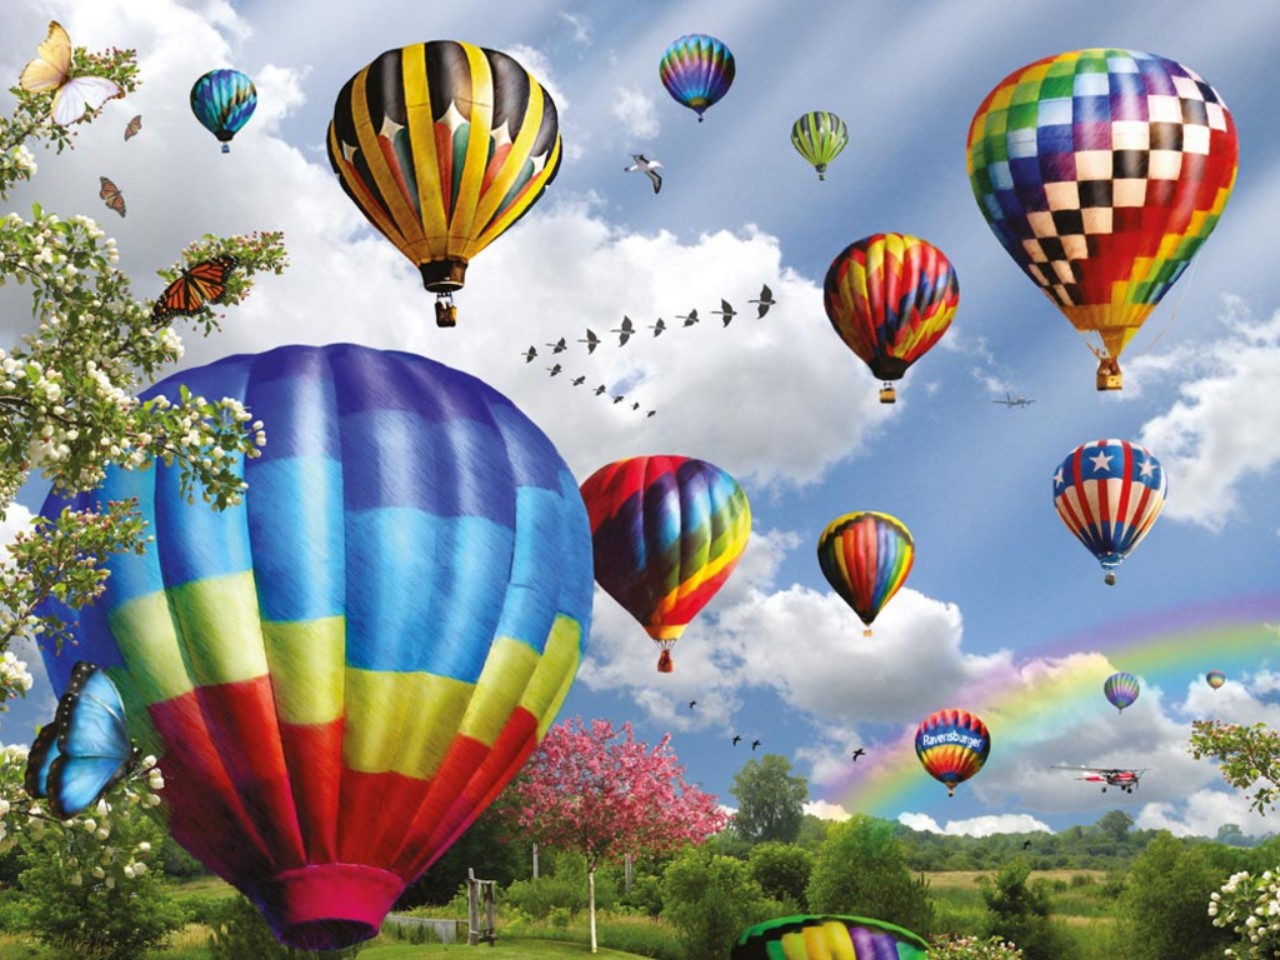 artistic, balloon, hot air balloon, sky